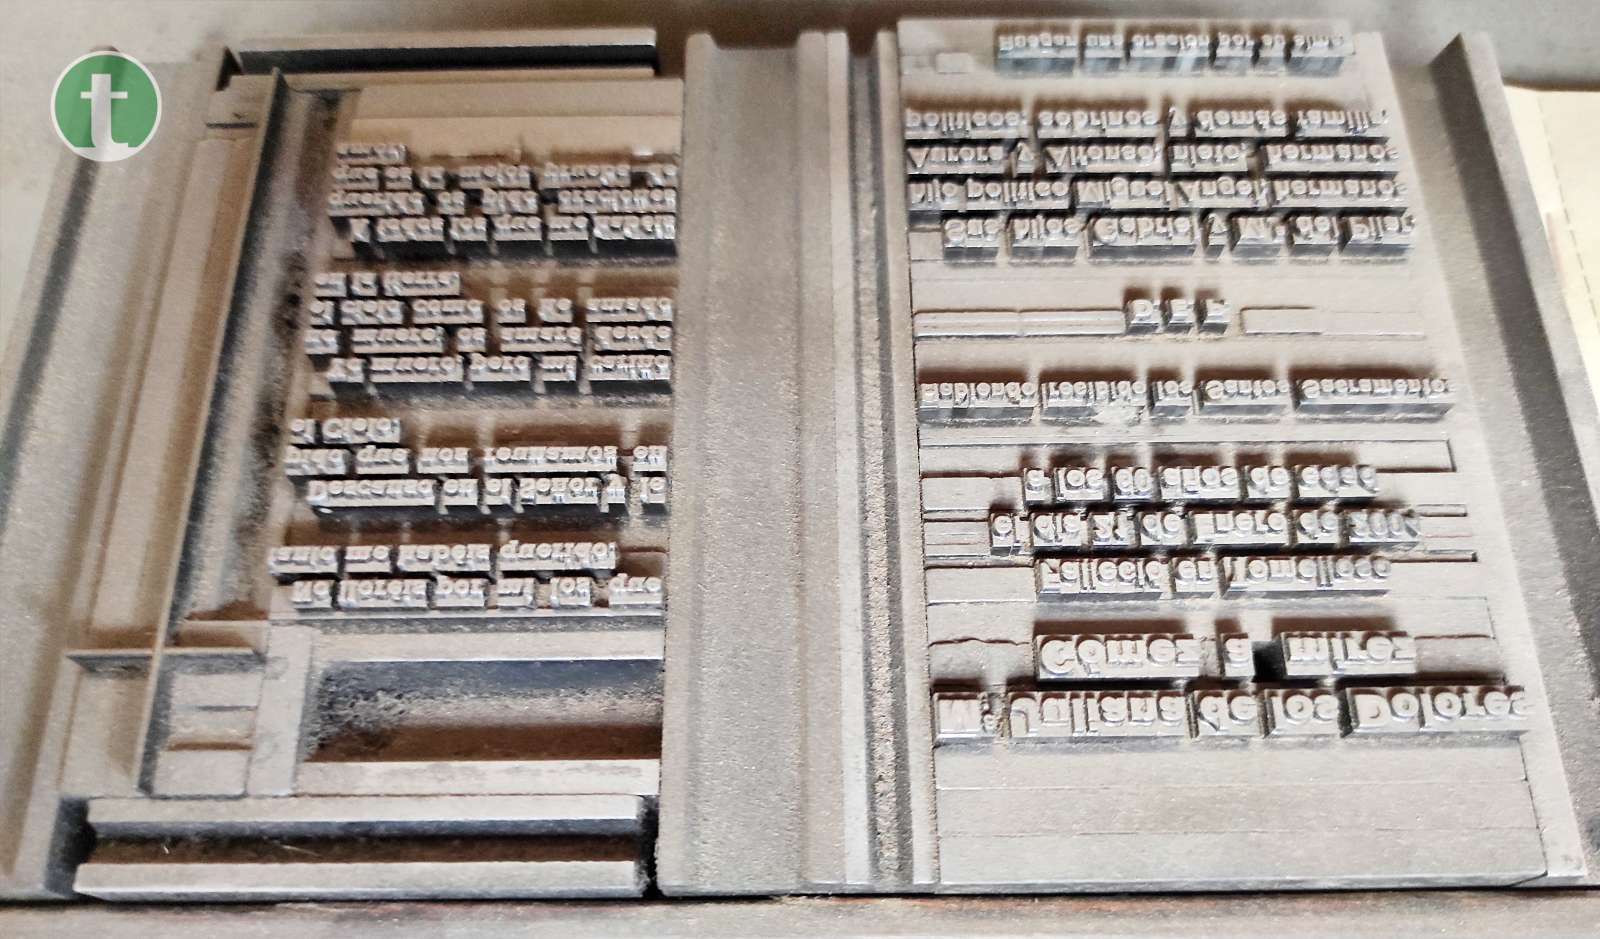 Marca Tomelloso: Imprenta Osuna, 106 años de uno de los negocios más longevos de Tomelloso